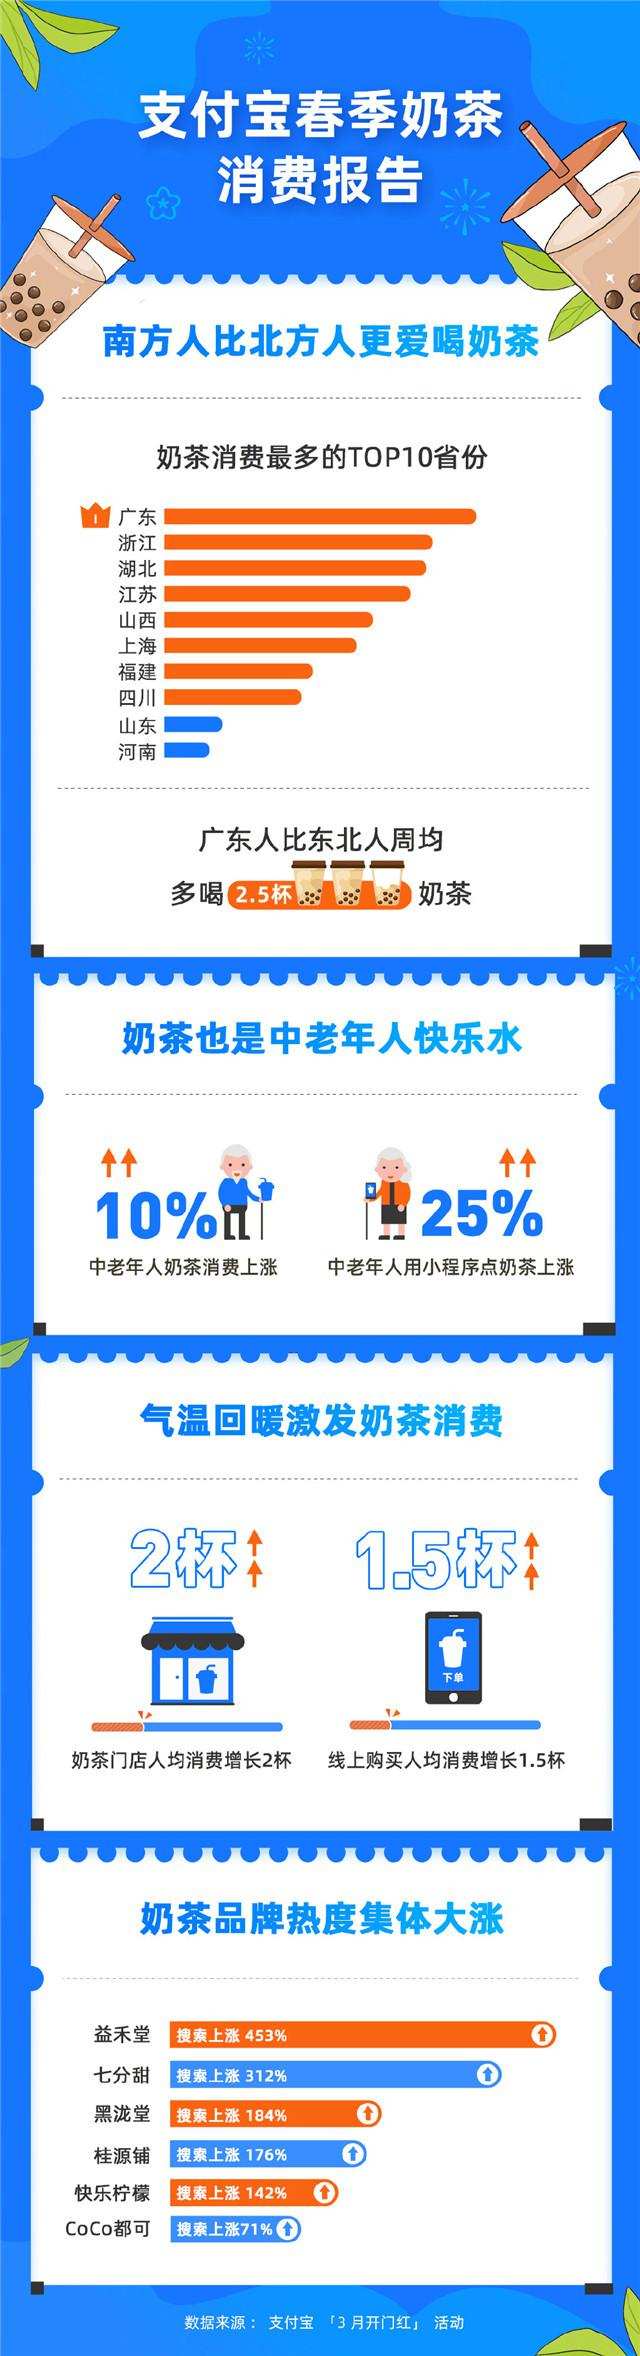 支付宝发布春季奶茶消费报告，江苏位列全国第四